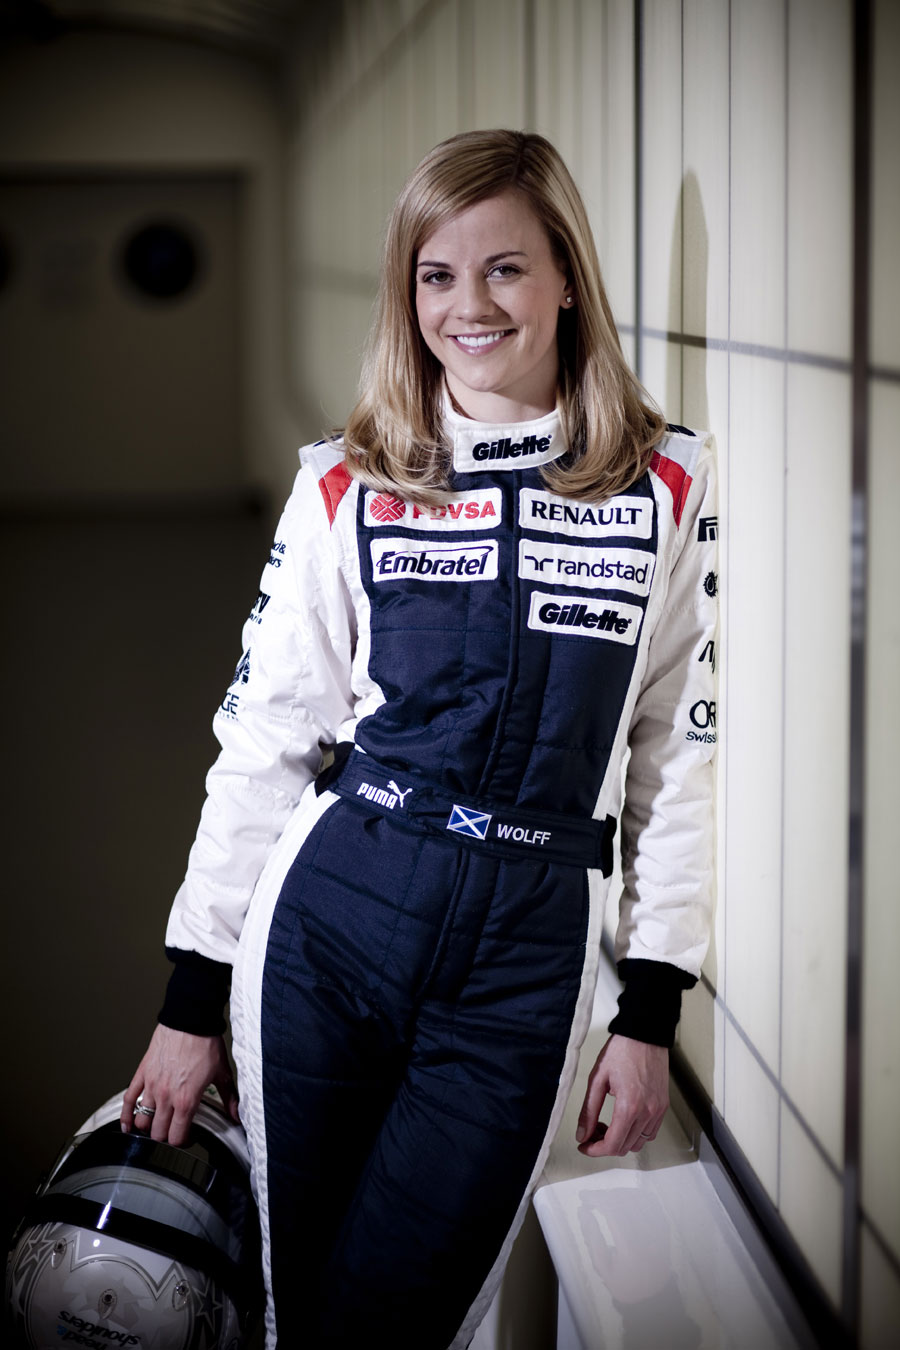 New Williams development driver Susie Wolff